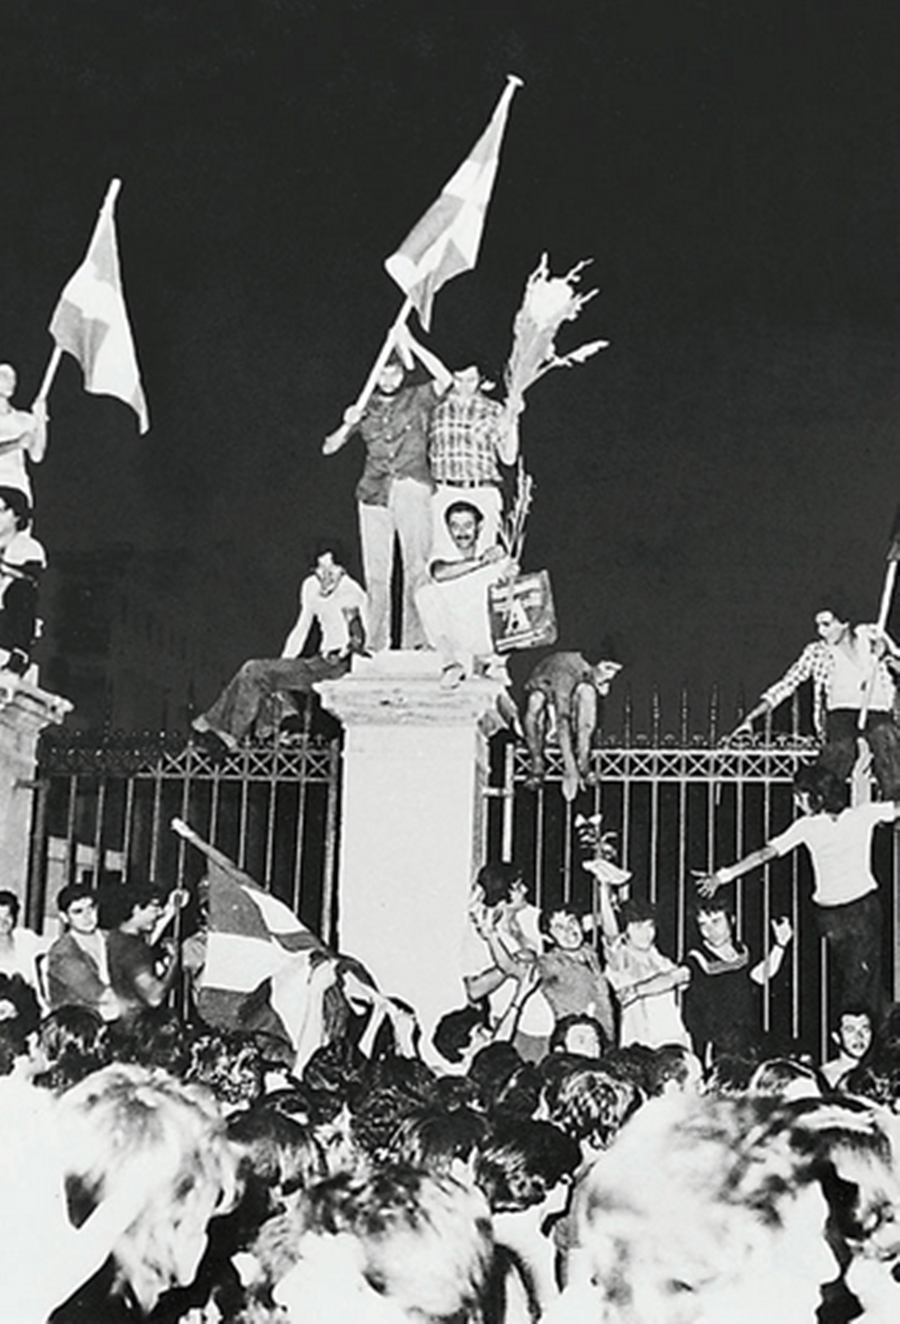 Πολυτεχνείο 1973: Η εξέγερση των φοιτητών στις 17 Νοέμβρη-2